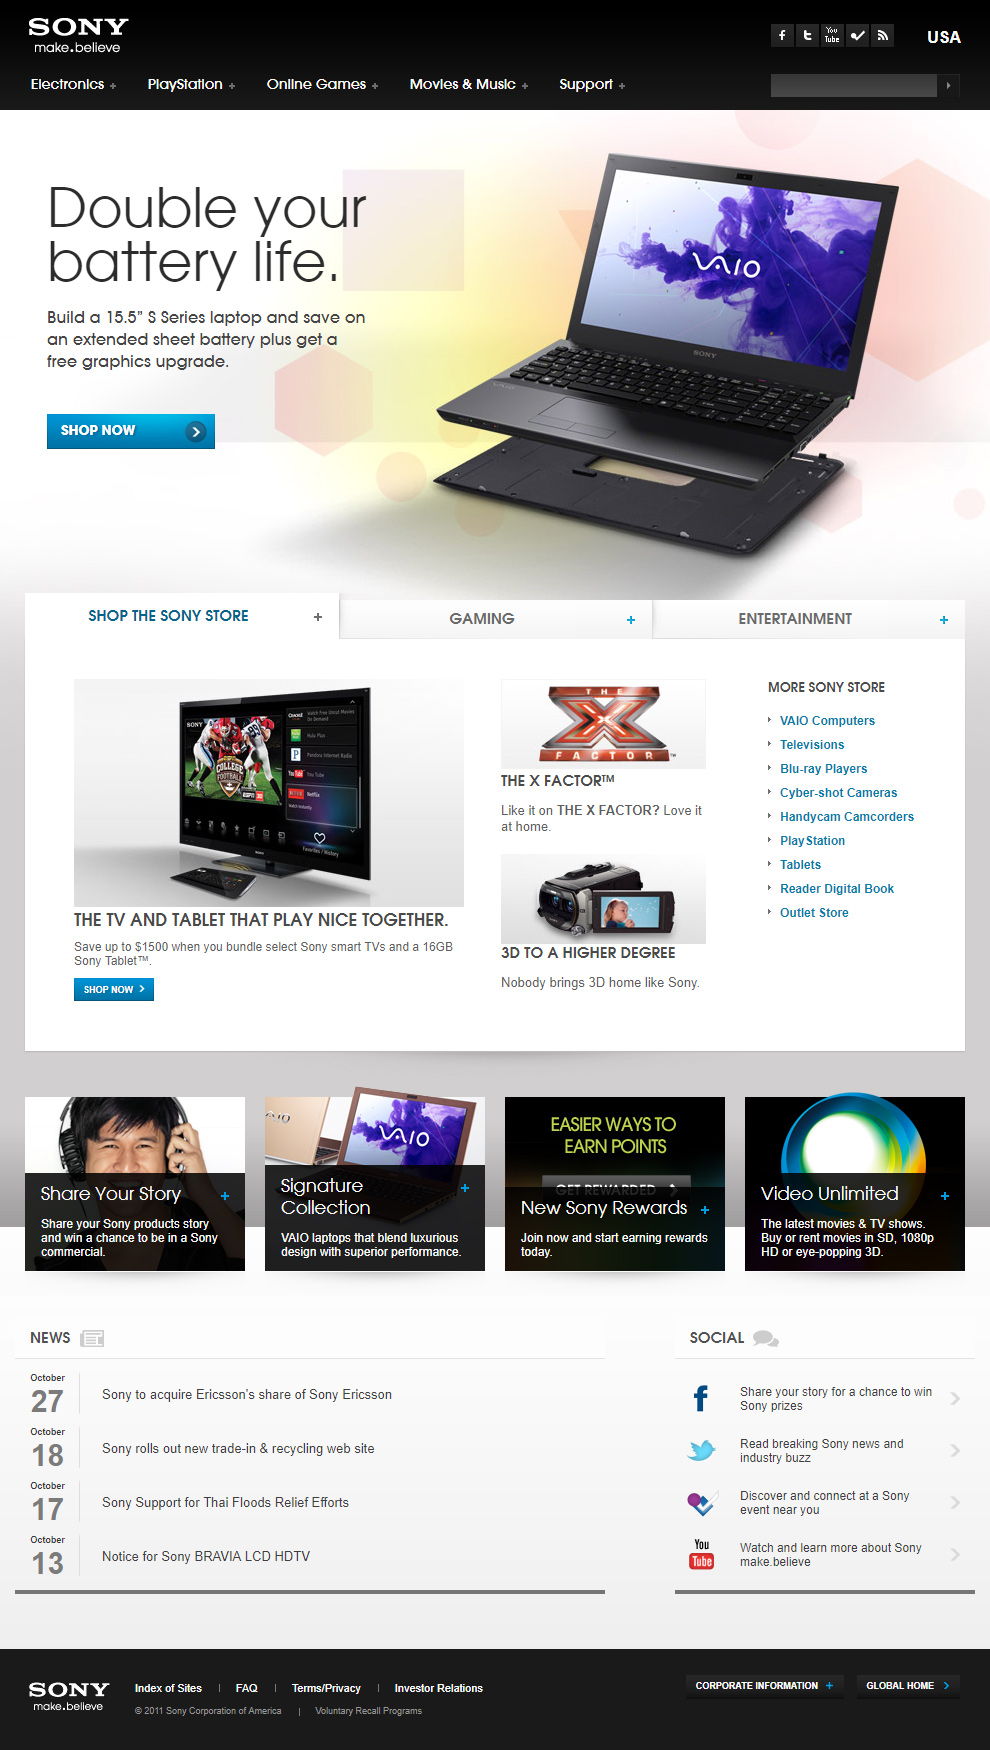 Sony website in 2011